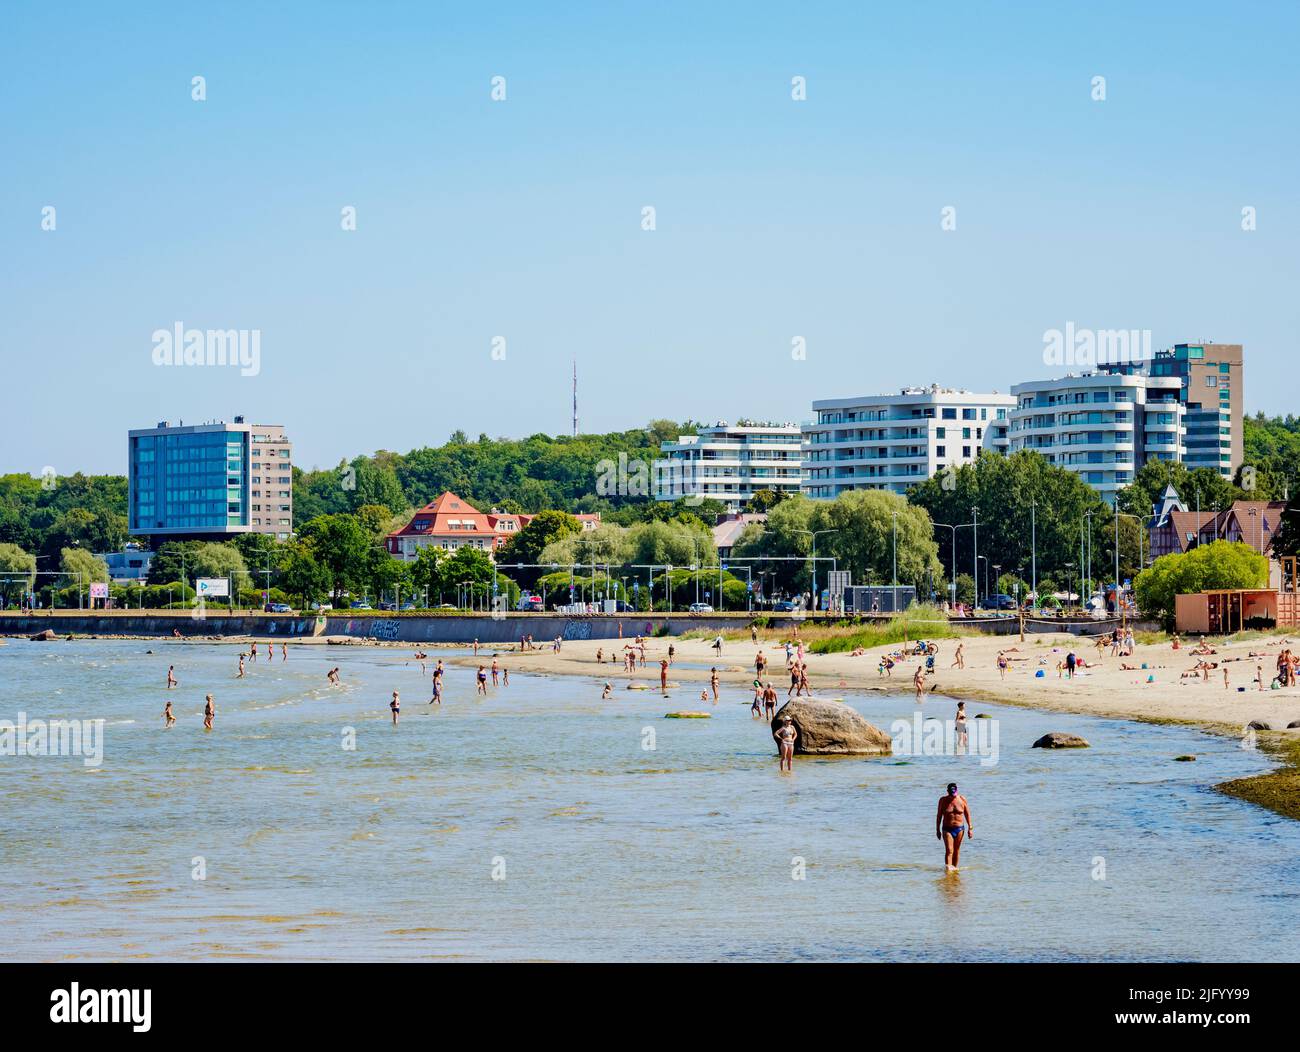 People at the City Beach, Tallinn, Estonia, Europe Stock Photo